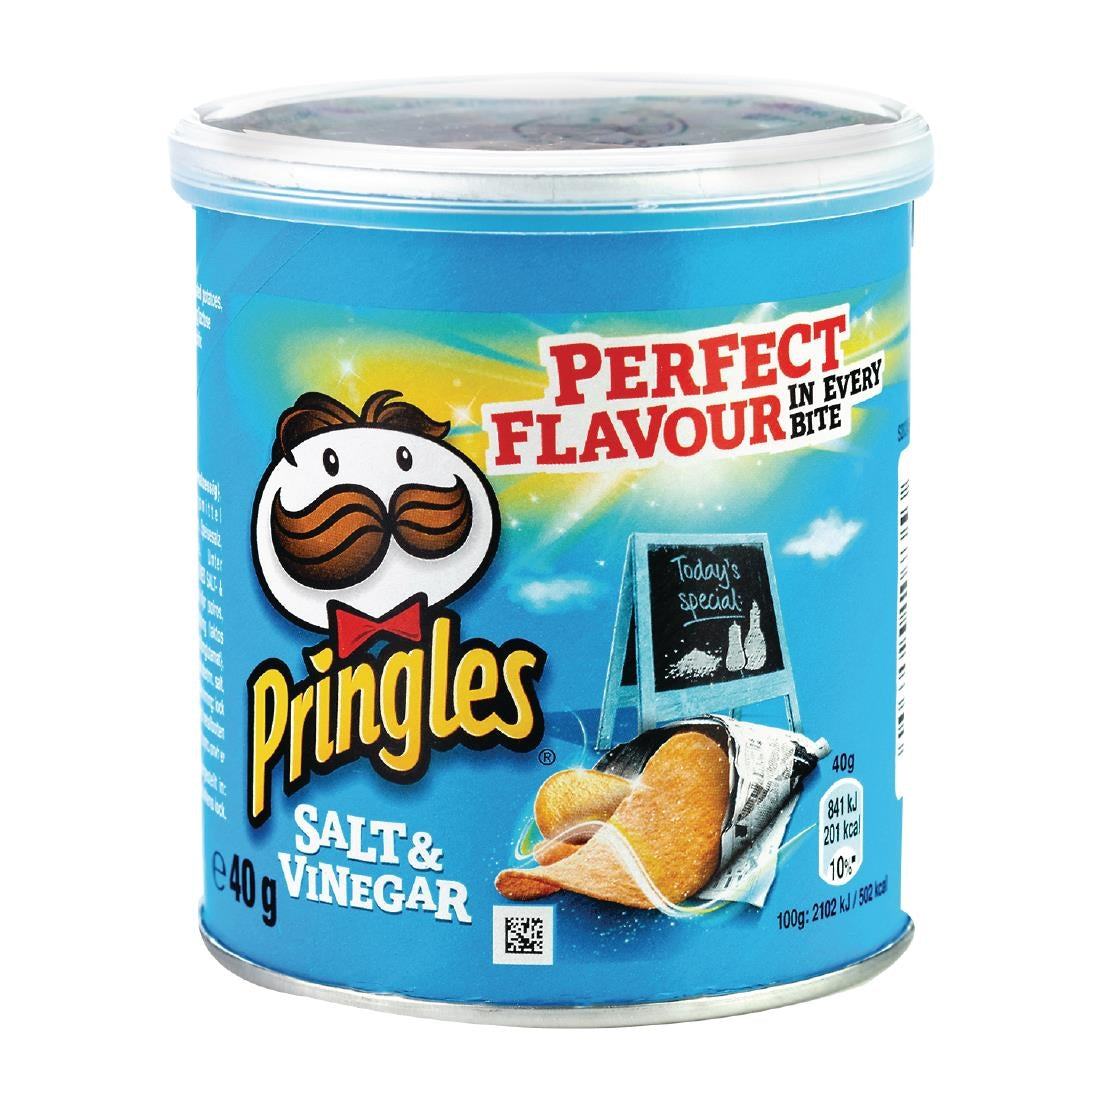 Pringles Salt & Vinegar - 40g (Case 12)